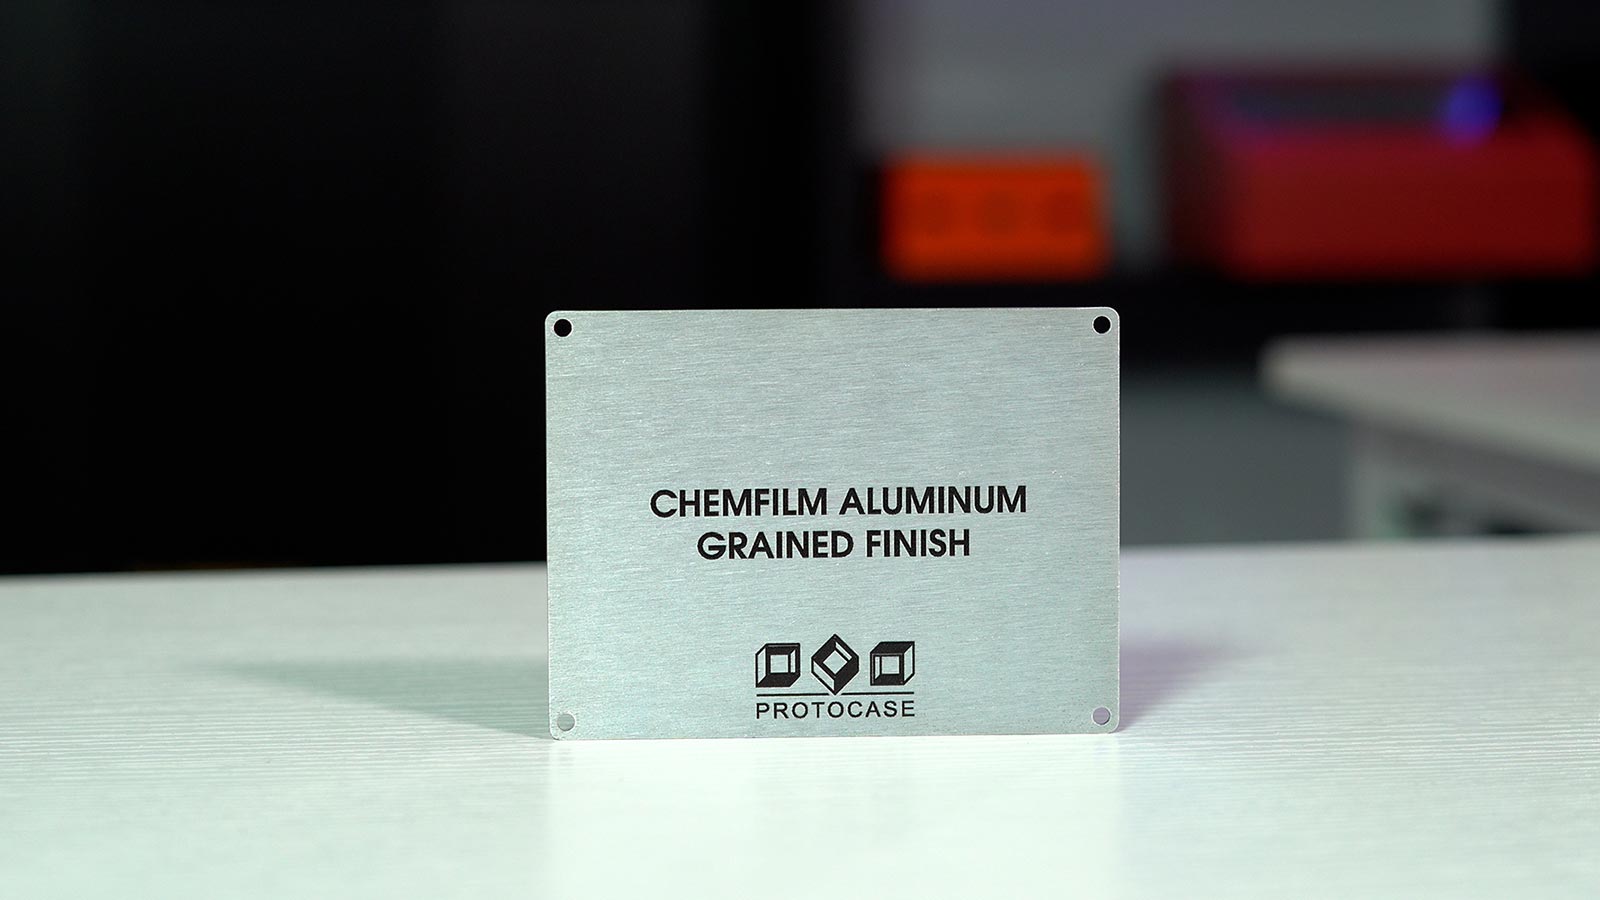 Chem Film Aluminum with Grained Finish